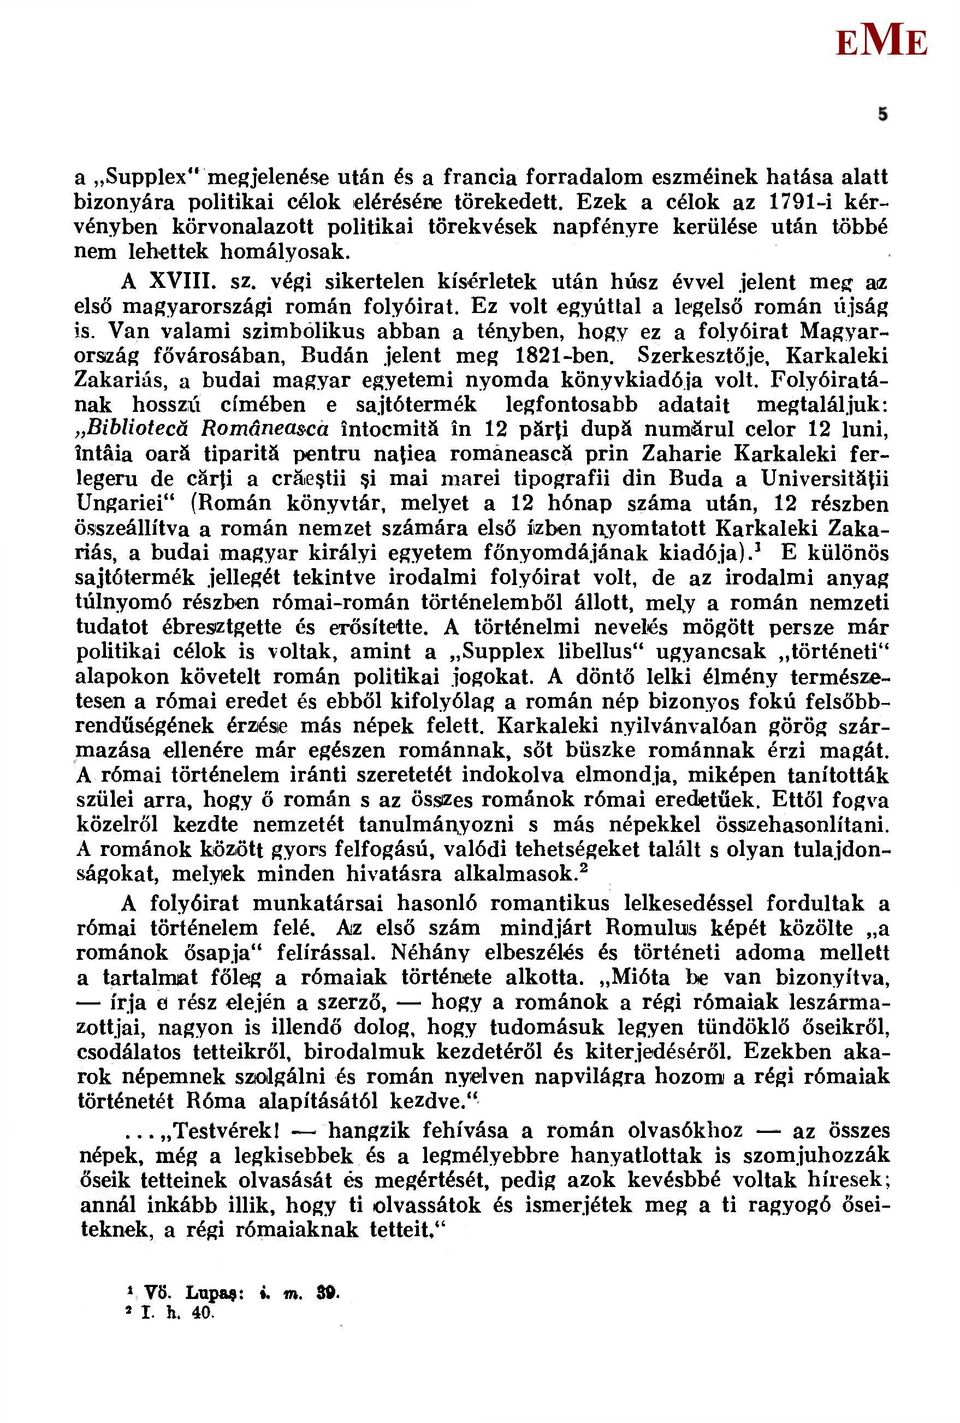 végi sikertelen kísérletek után húsz évvel jelent meg az első magyarországi román folyóirat. z volt egyúttal a legelső román újság is.